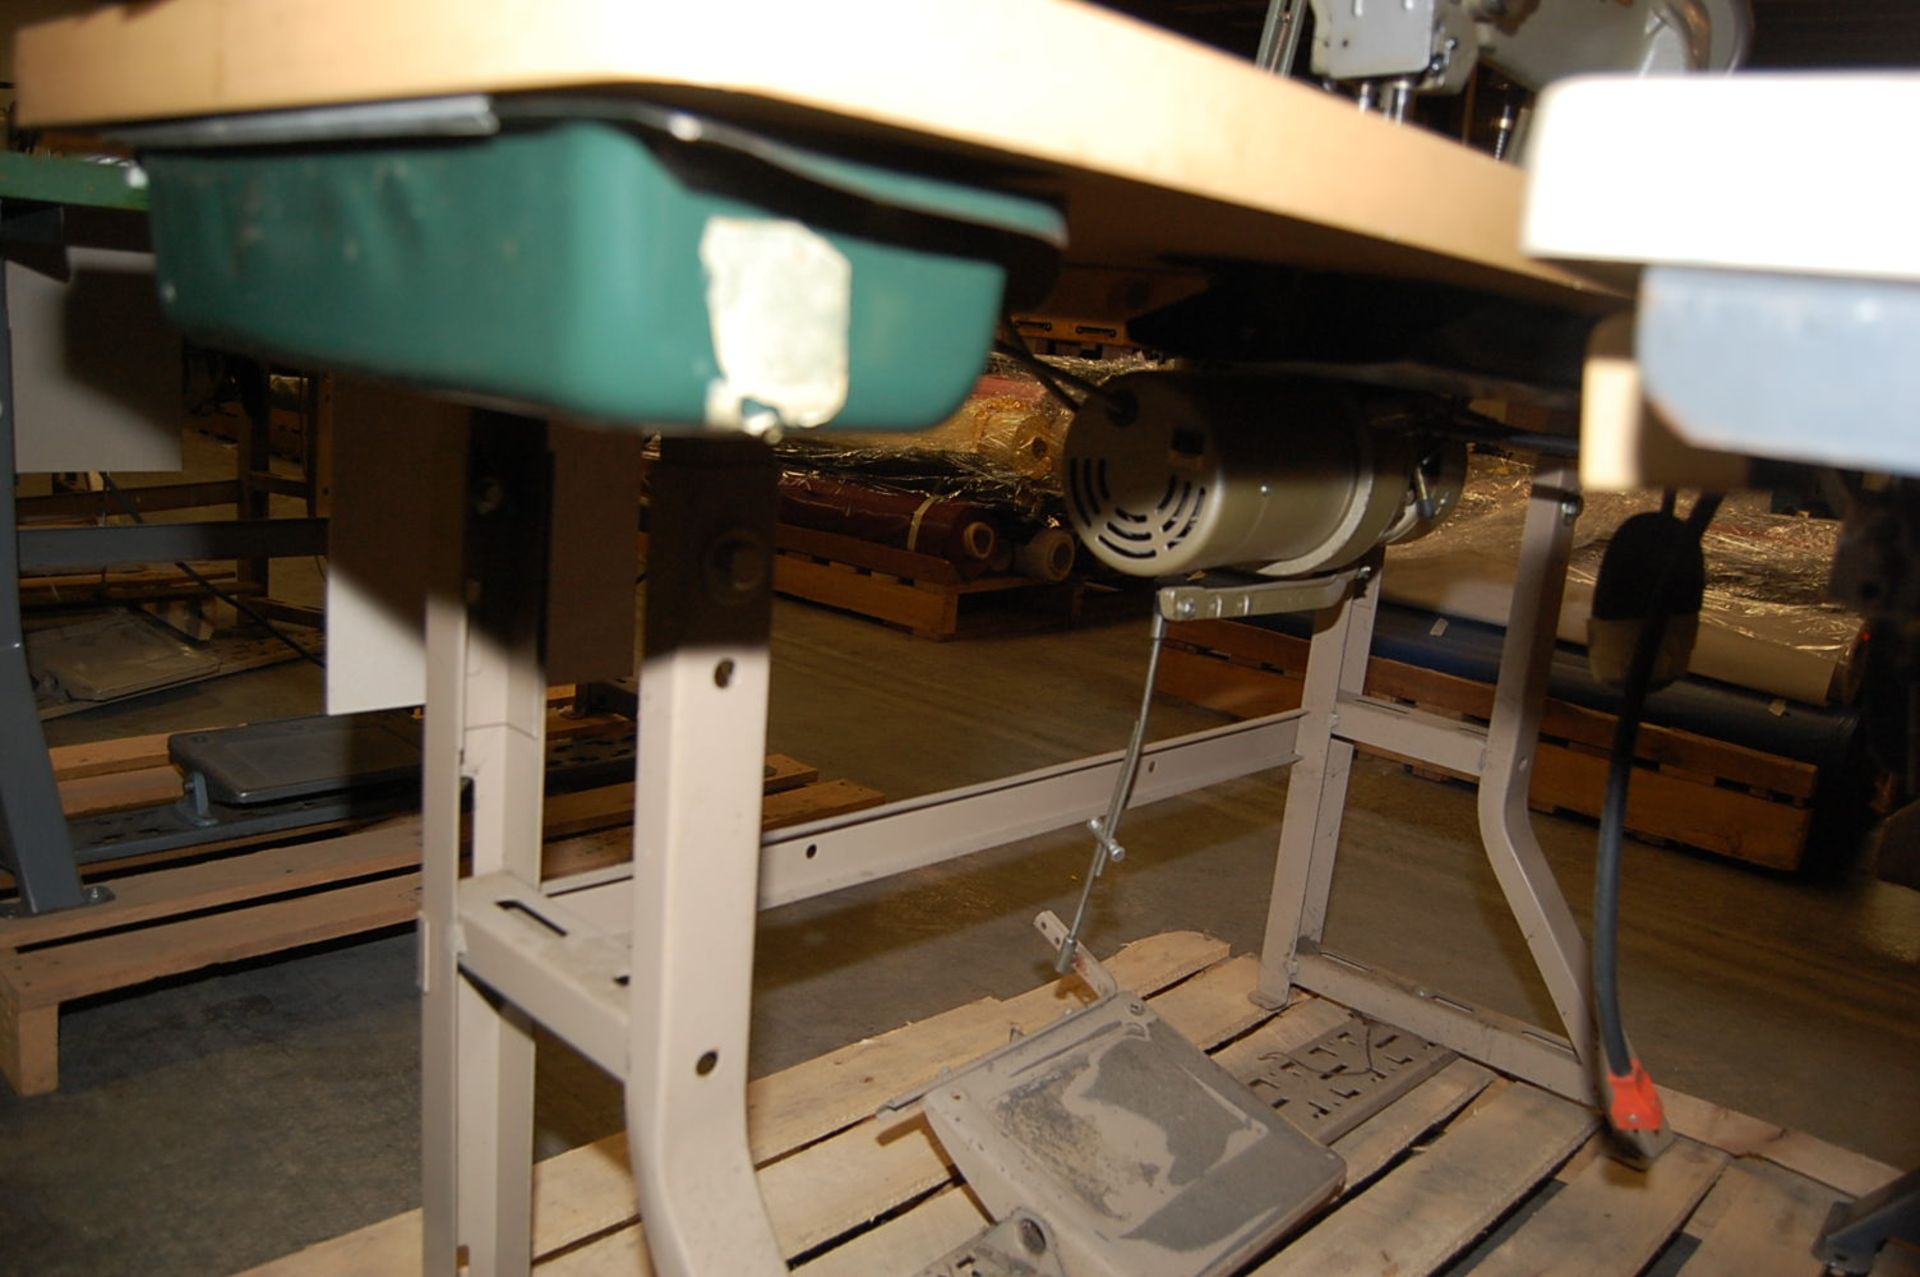 Juki Model #LU-562 Sewing Machine Mounted on Bench, Serial #4562-04336 - Image 2 of 2